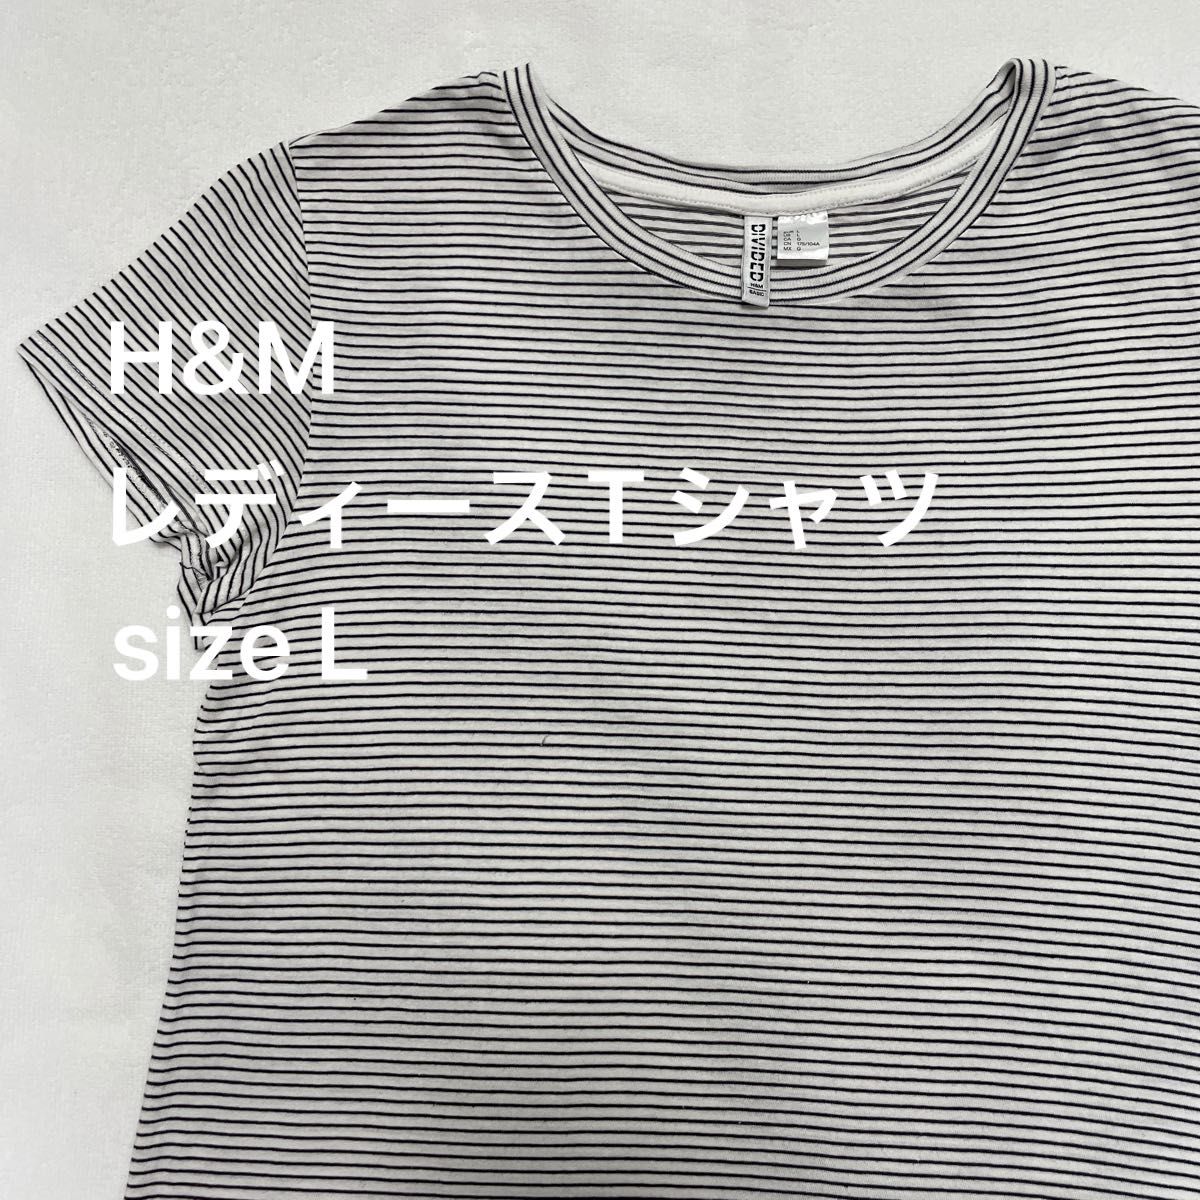 レディース Tシャツ ボーダー柄 半袖 カットソー H&M size L